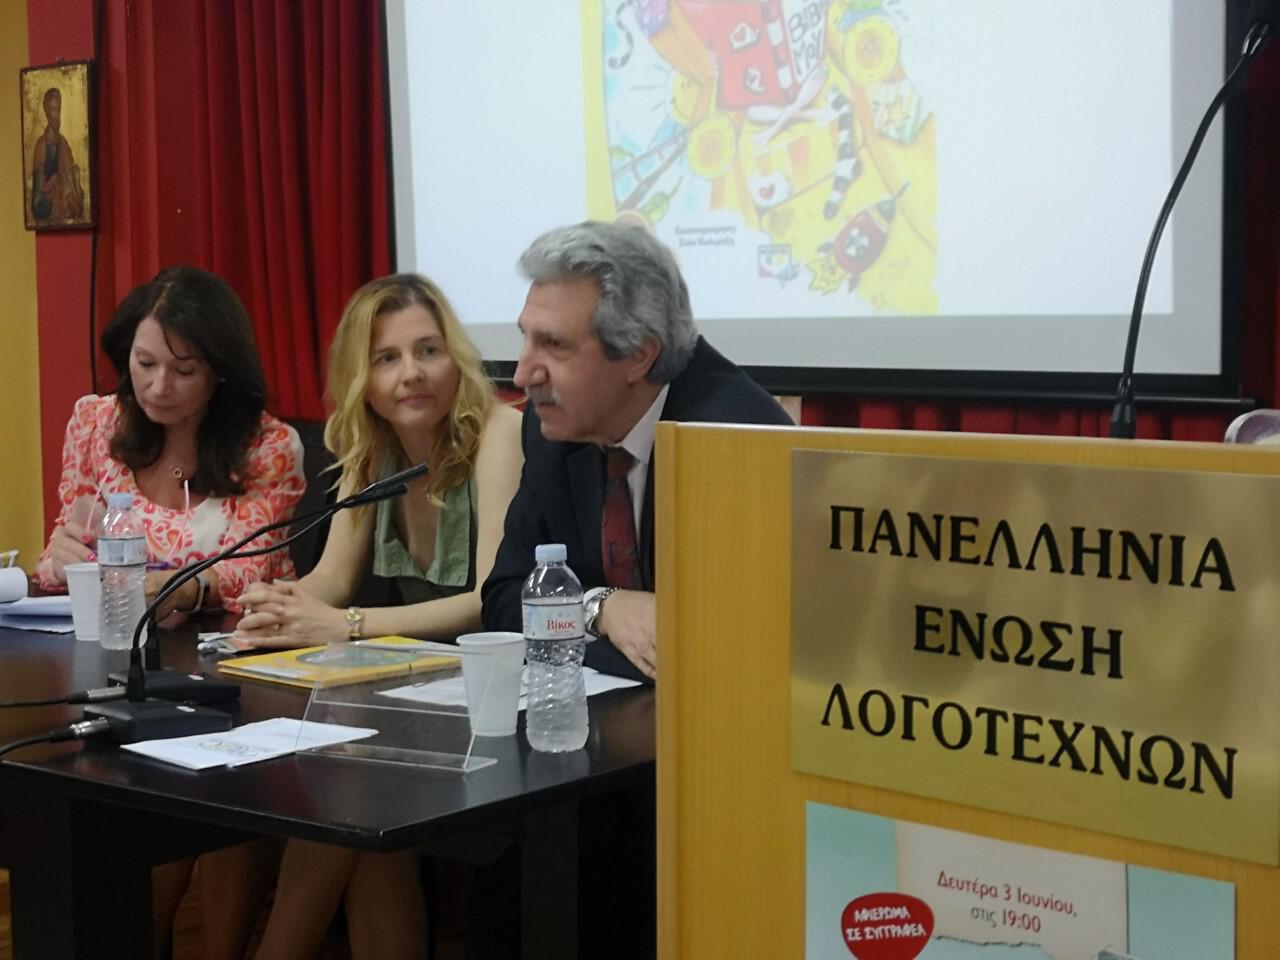 03/06/2019, Στην Πανελλήνια Ένωση Λογοτεχνών, παρουσίαση για το συνολικό έργο της Ράνια Μπουμπουρή. Ομιλητής και ο λογοτέχνης Λάμπρος Ηλίας.